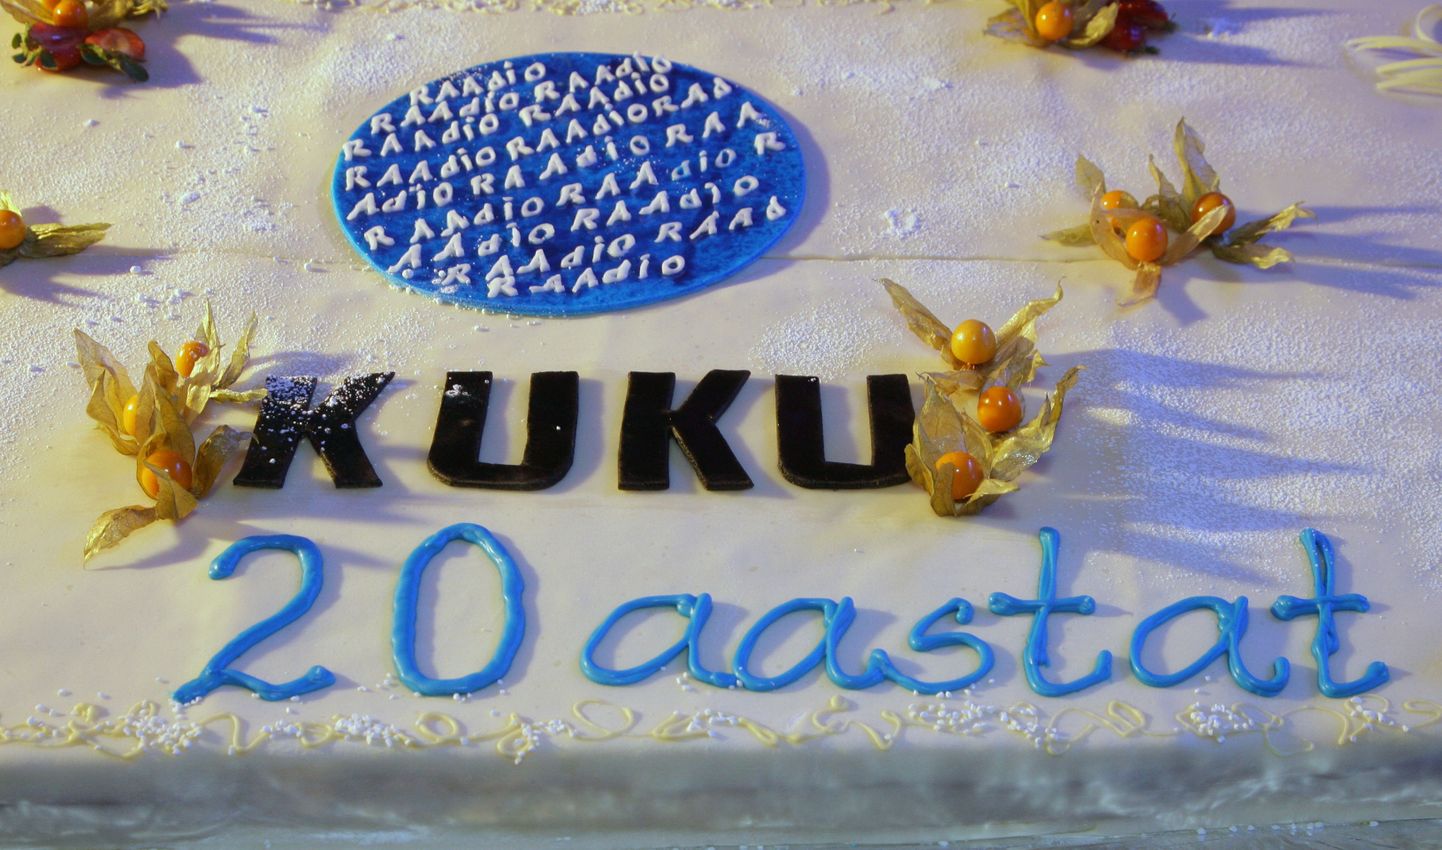 Eesti Meedia tahab Kuku Raadio omanikfirma enamusosalust.